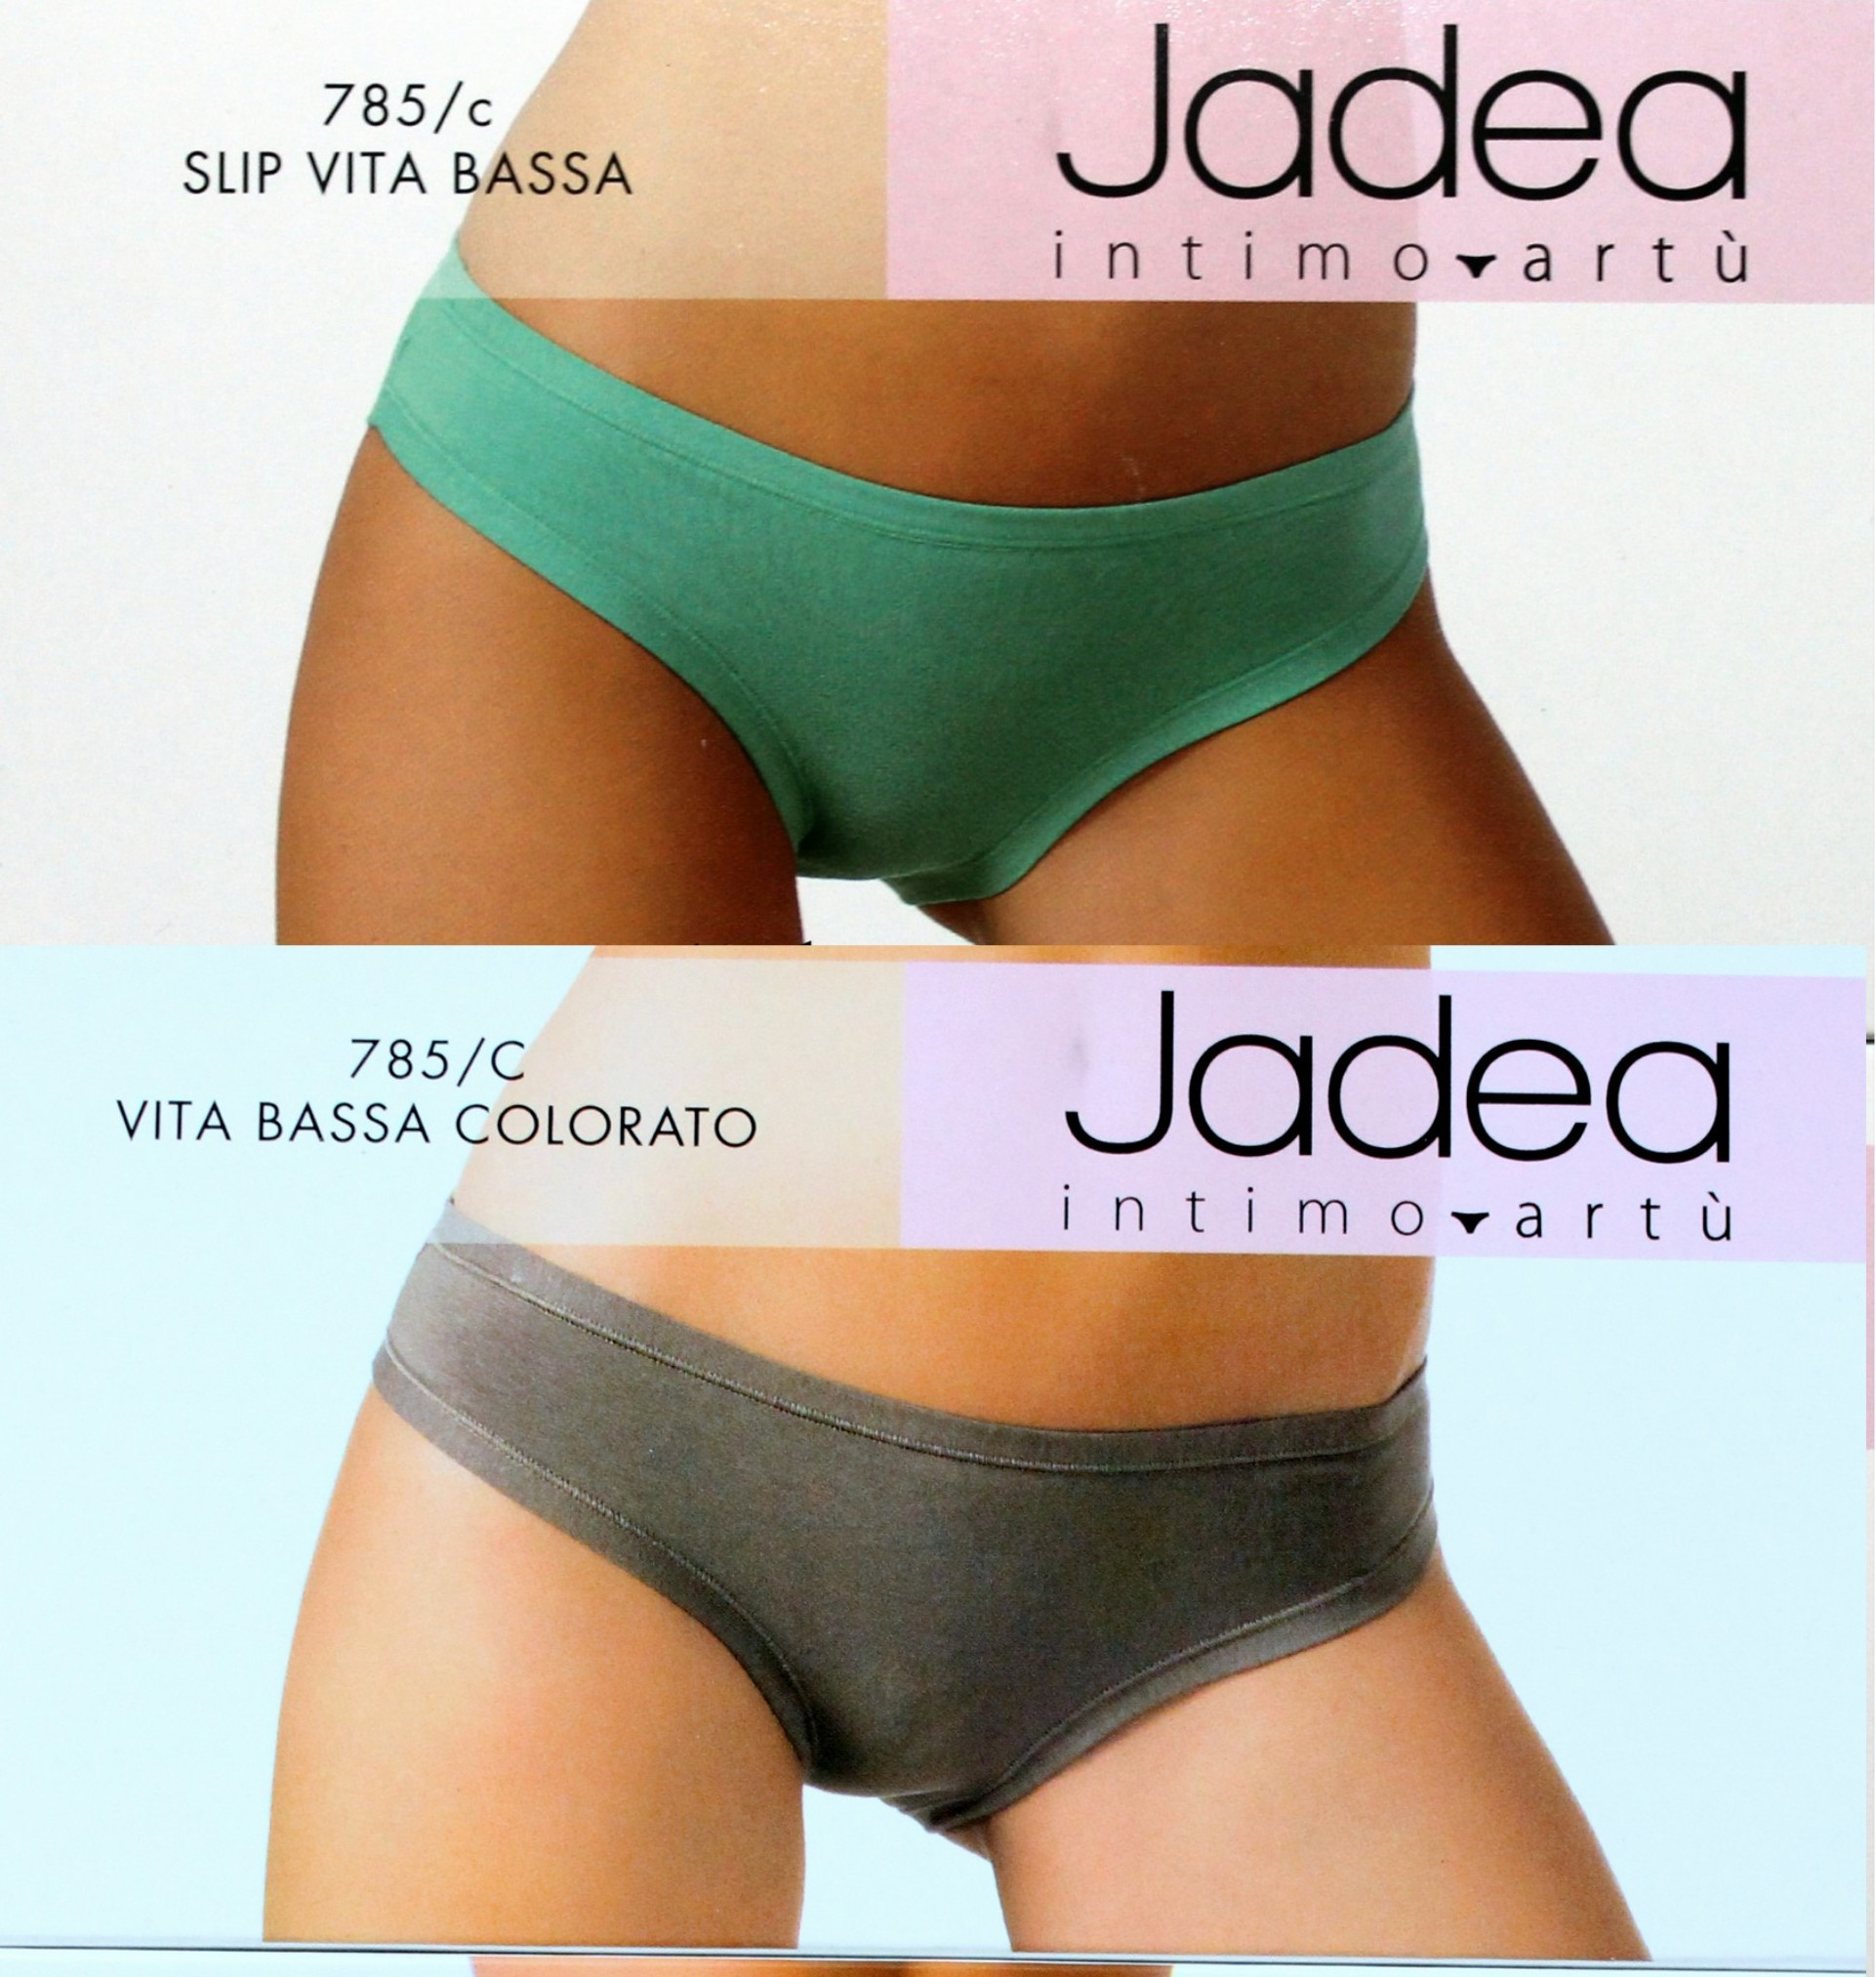 jadea 785